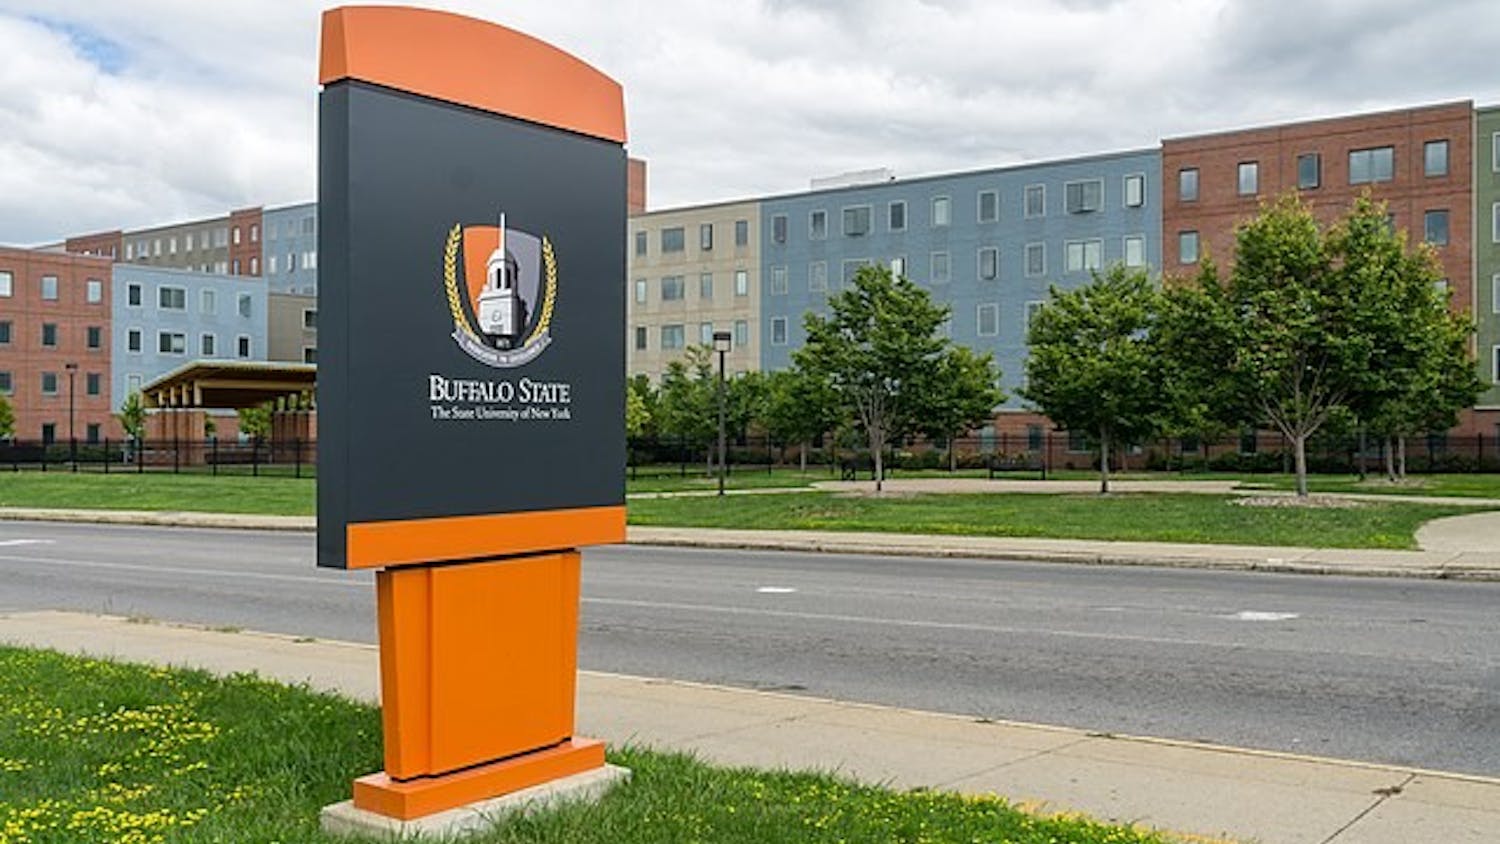 Buffalo State University celebrated its name change on Tuesday.